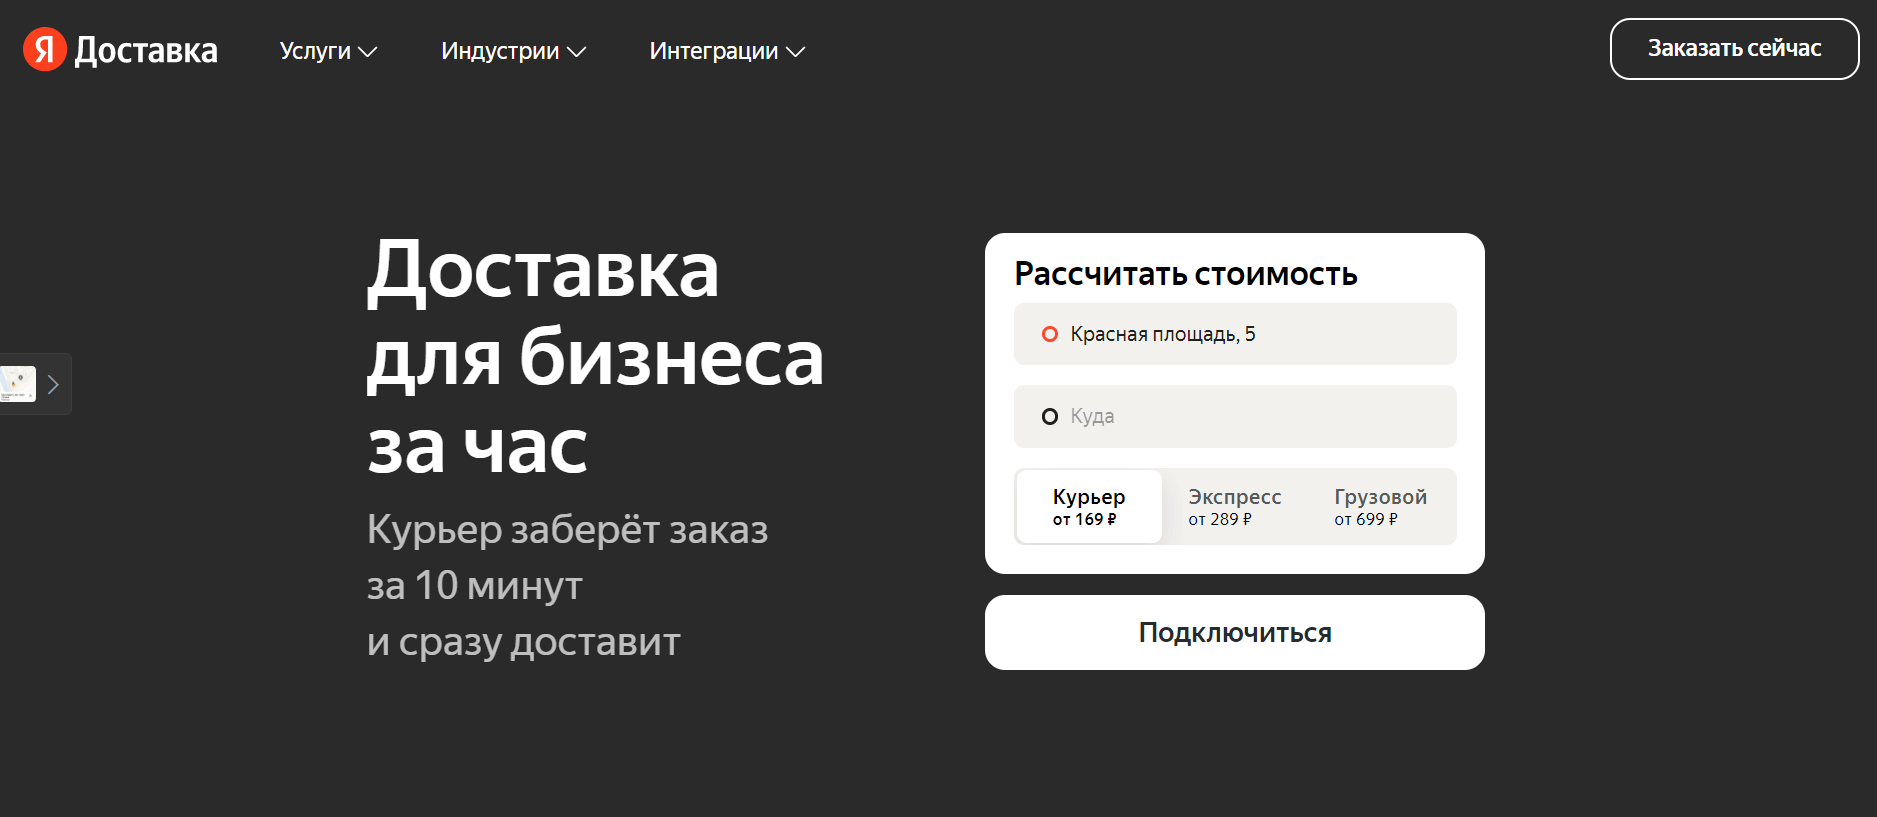 Пример предложения для бизнеса от Яндекс.Доставки